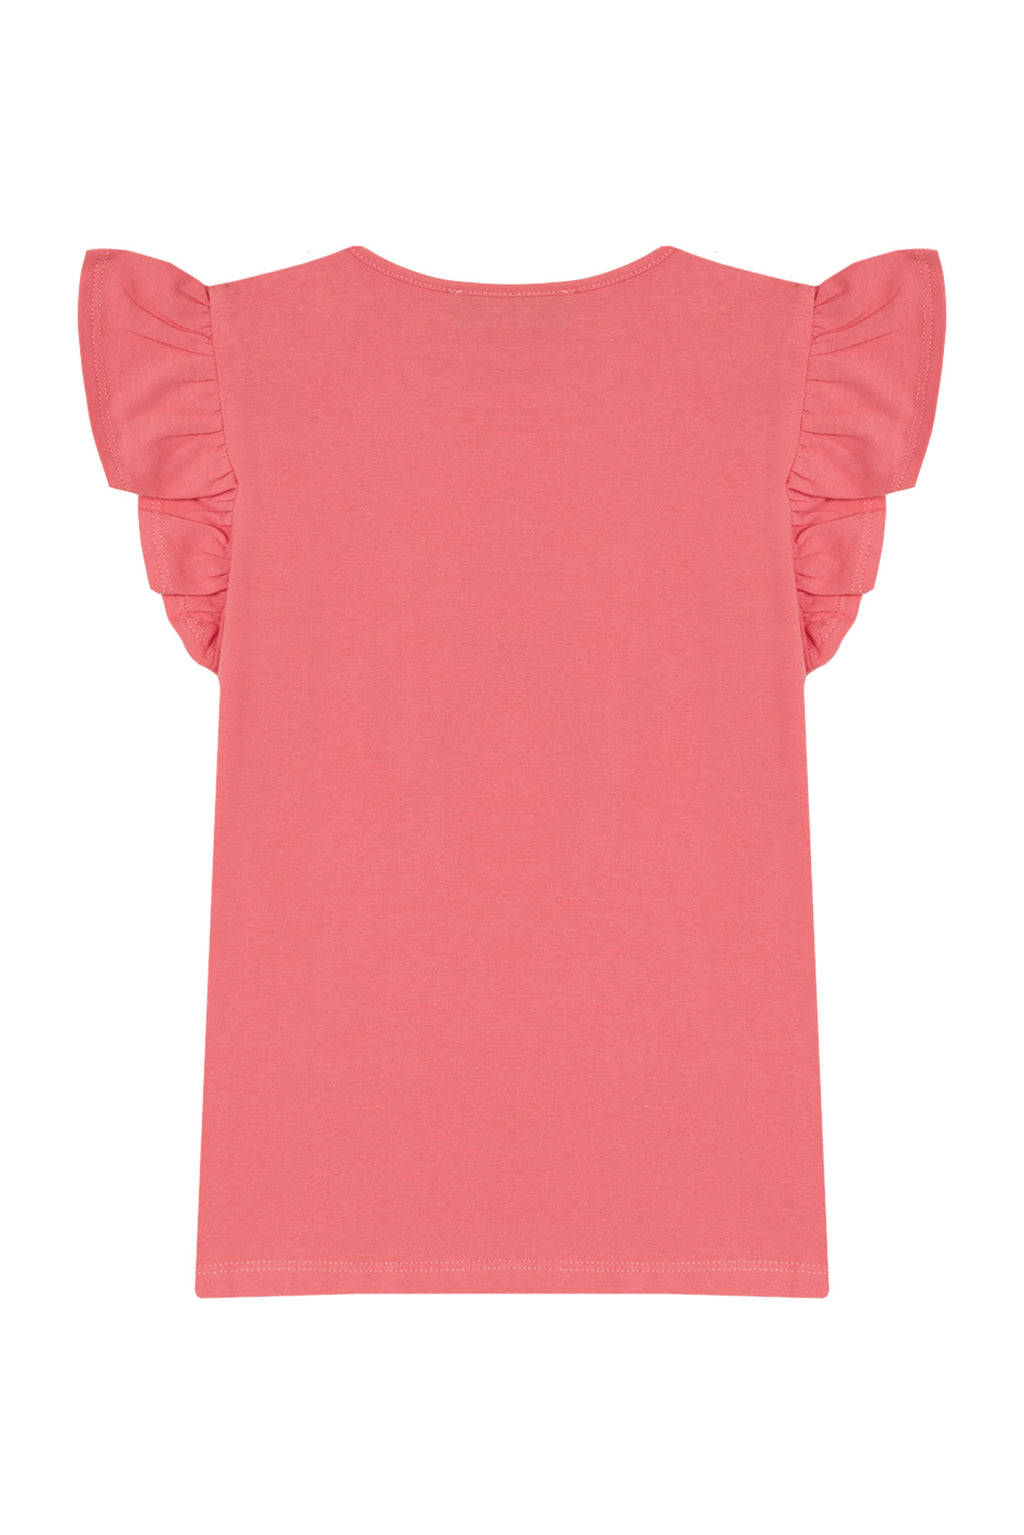 T-shirt - Rose Imprimé fleur